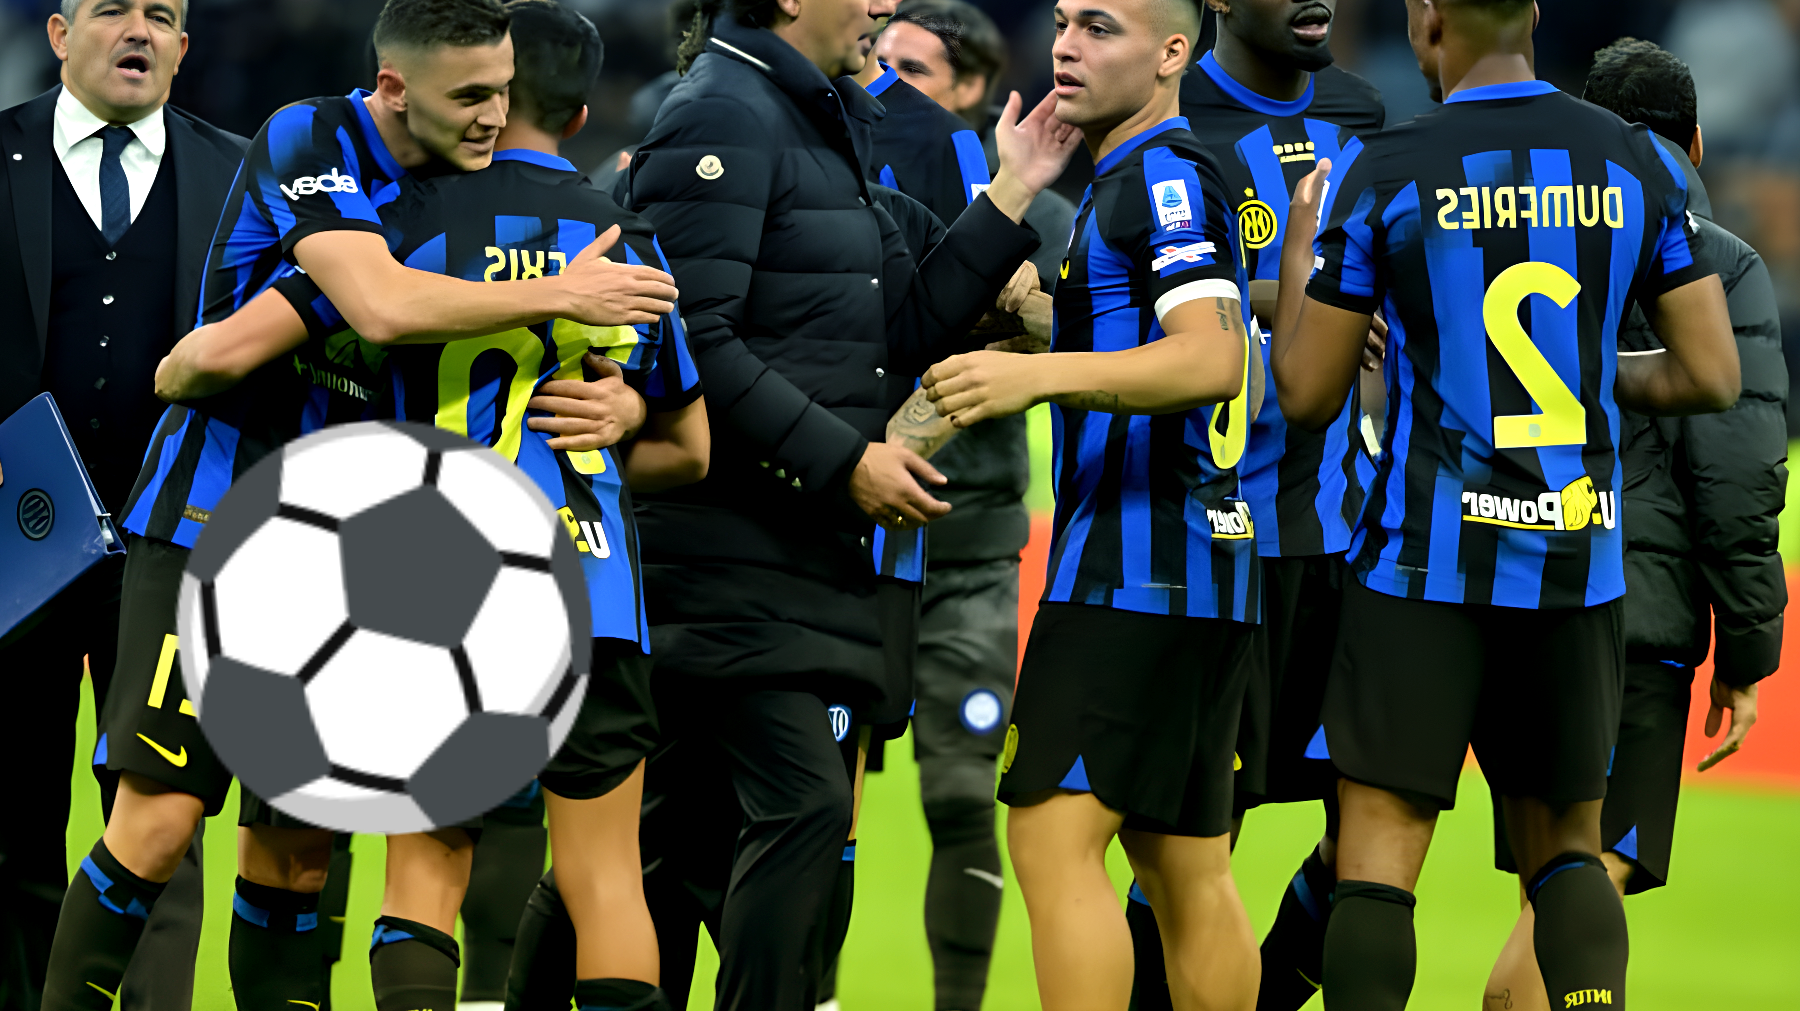 Alexis Sánchez, l'eroe dell'Inter: come ha stravolto il destino della squadra contro l'Empoli